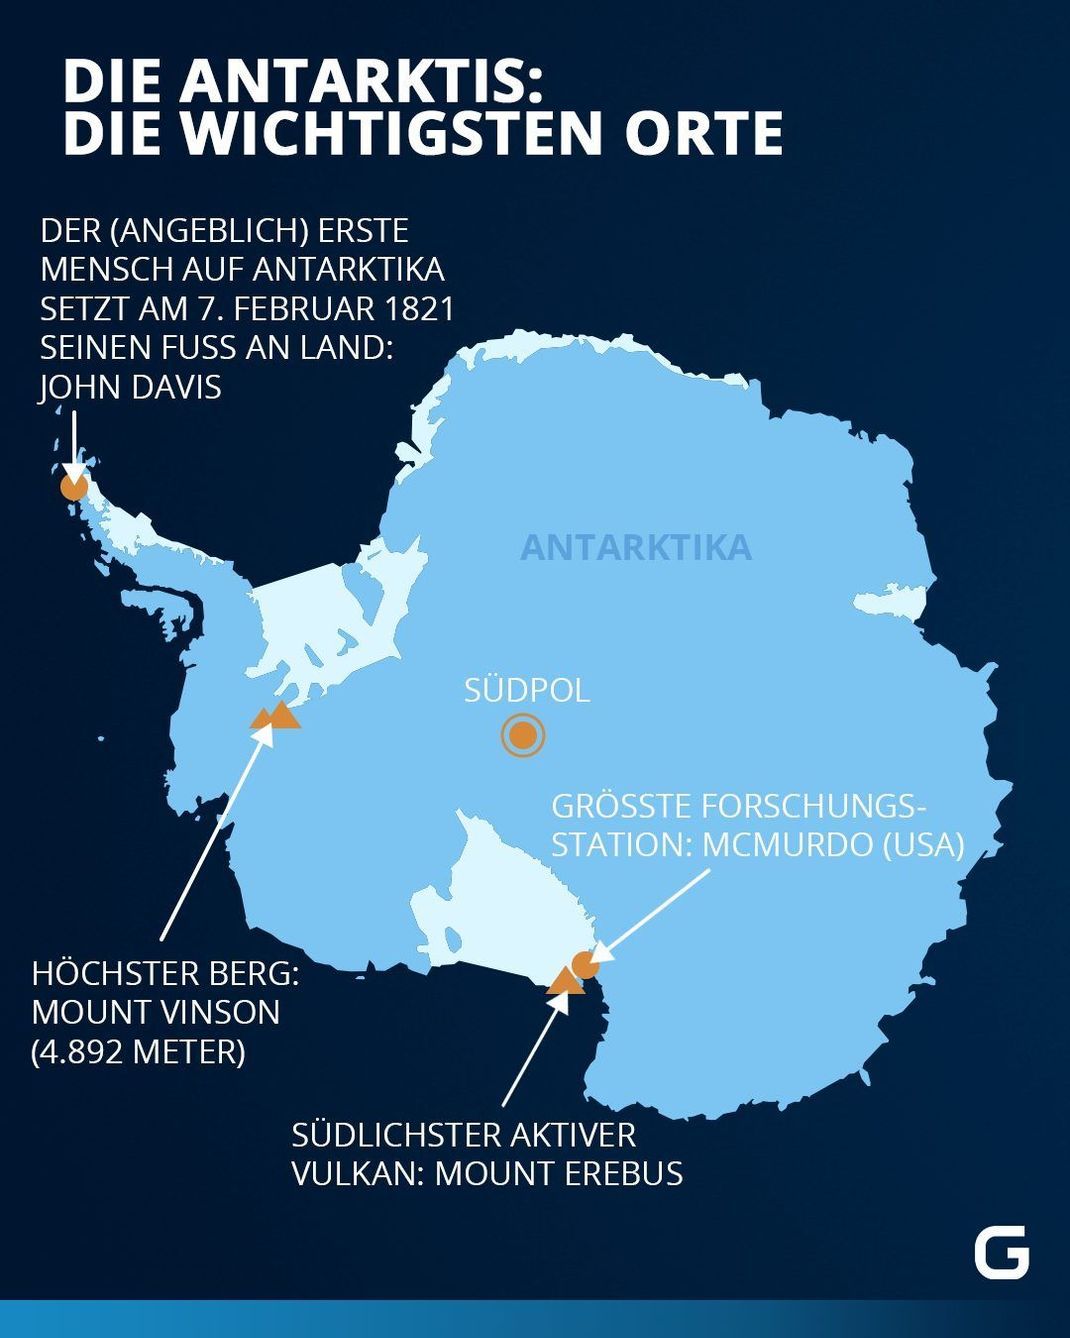 Die wichtigsten Orte der Antarktis 